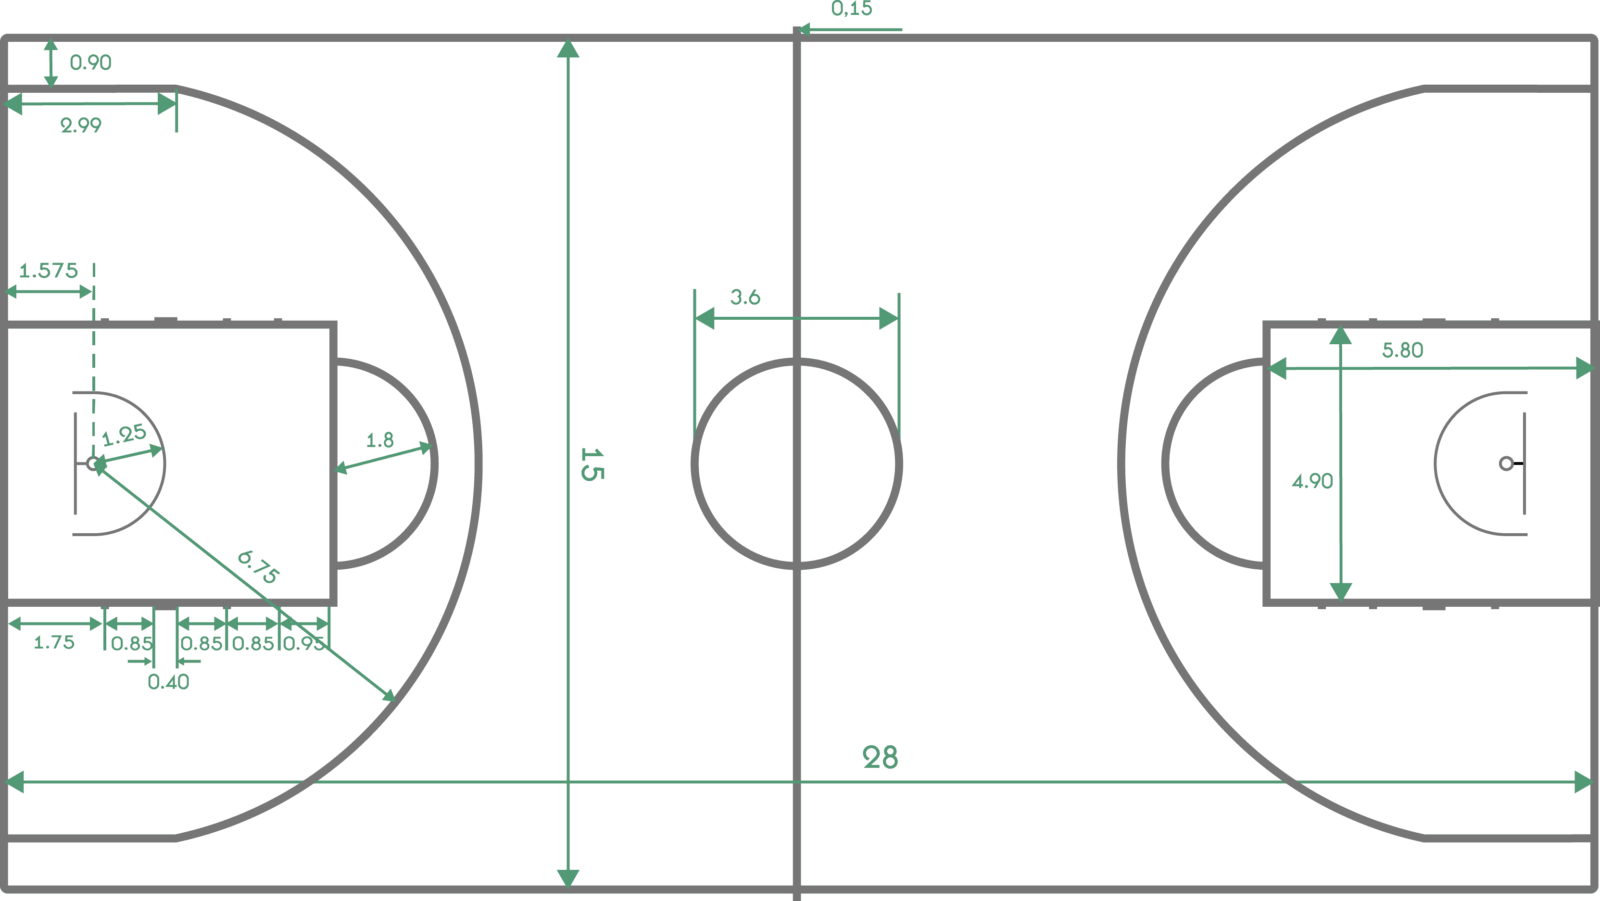 Длина поля 130 метров ширина. Баскетбольное поле схема разметки линий. Чертёж баскетбольной площадки с размерами. Разметка баскетбольной площадки. Разметка баскетбольной площадки с размерами.